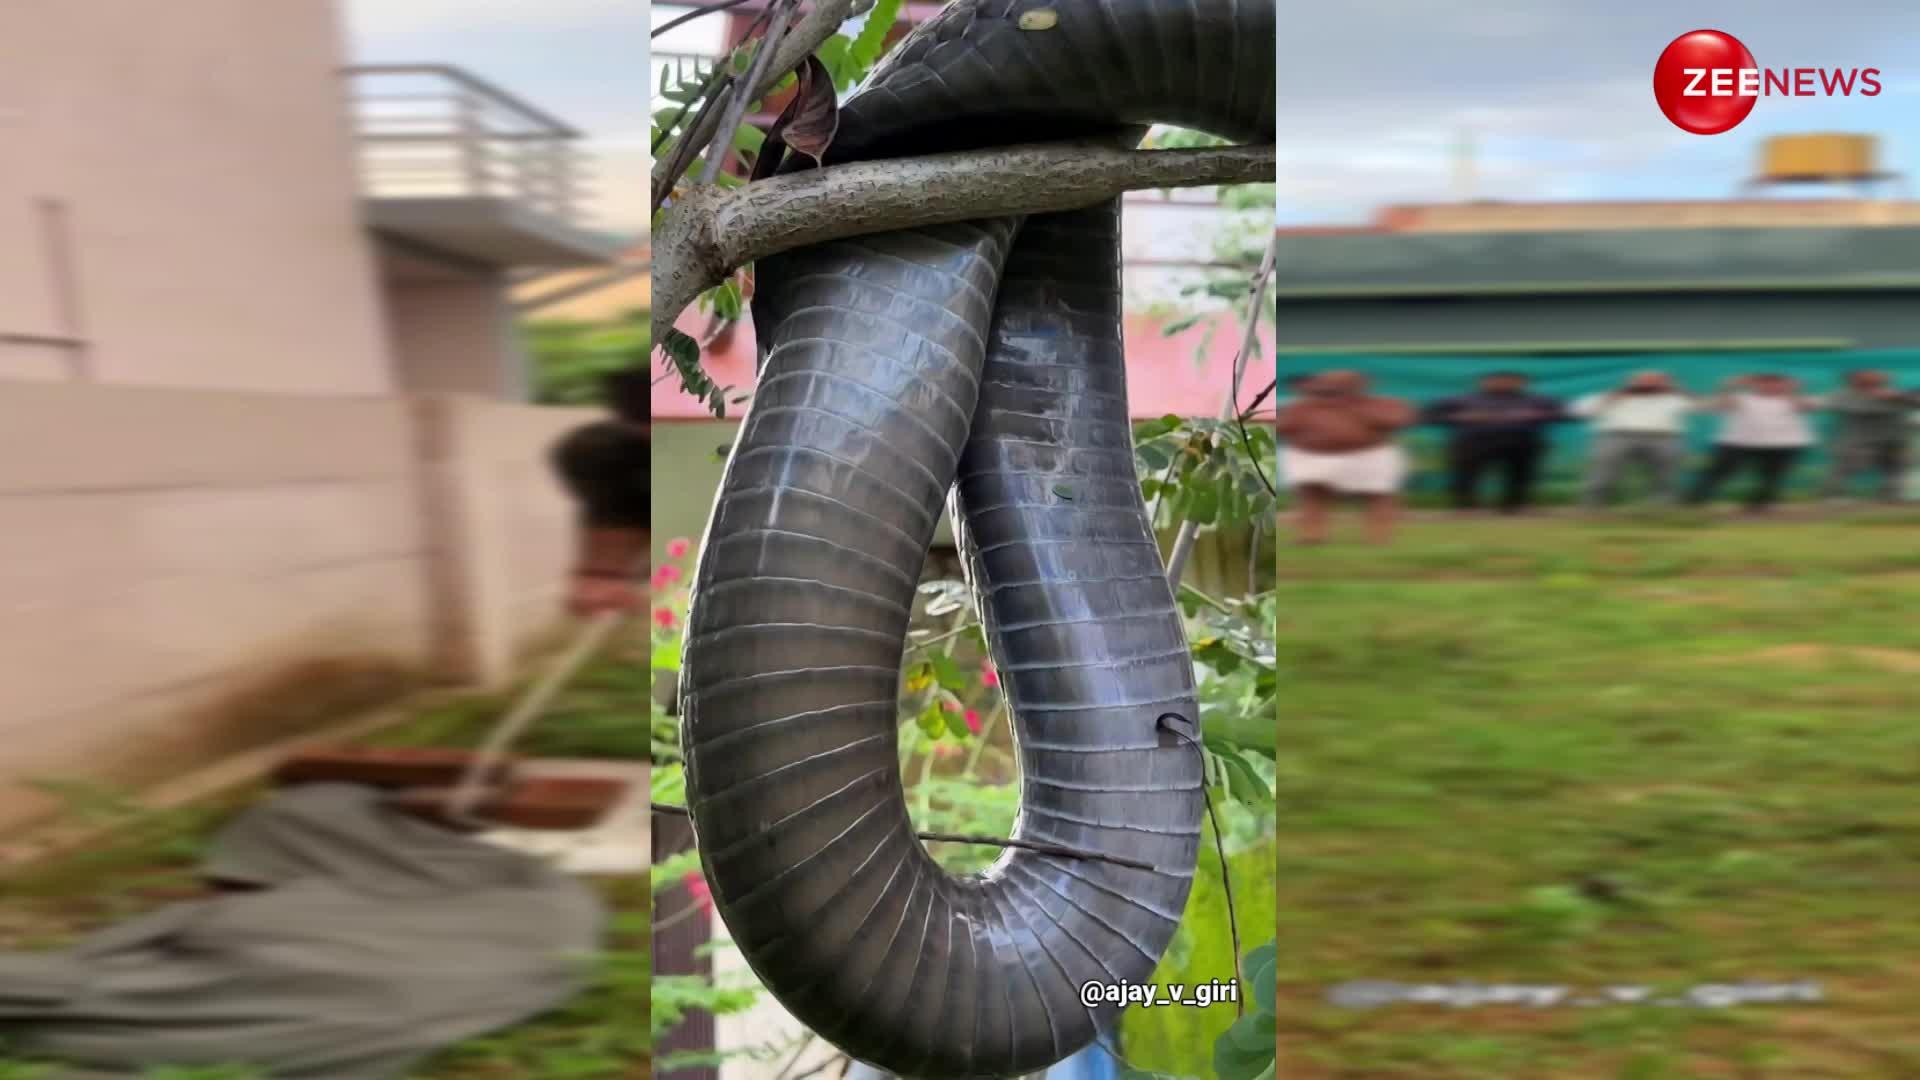 घर के गार्डन में शख्स को दिखा 12 फुट लंबा किंग कोबरा, घरवालों के उड़े होश; कड़ी मशक्कत से हुआ रेस्क्यू